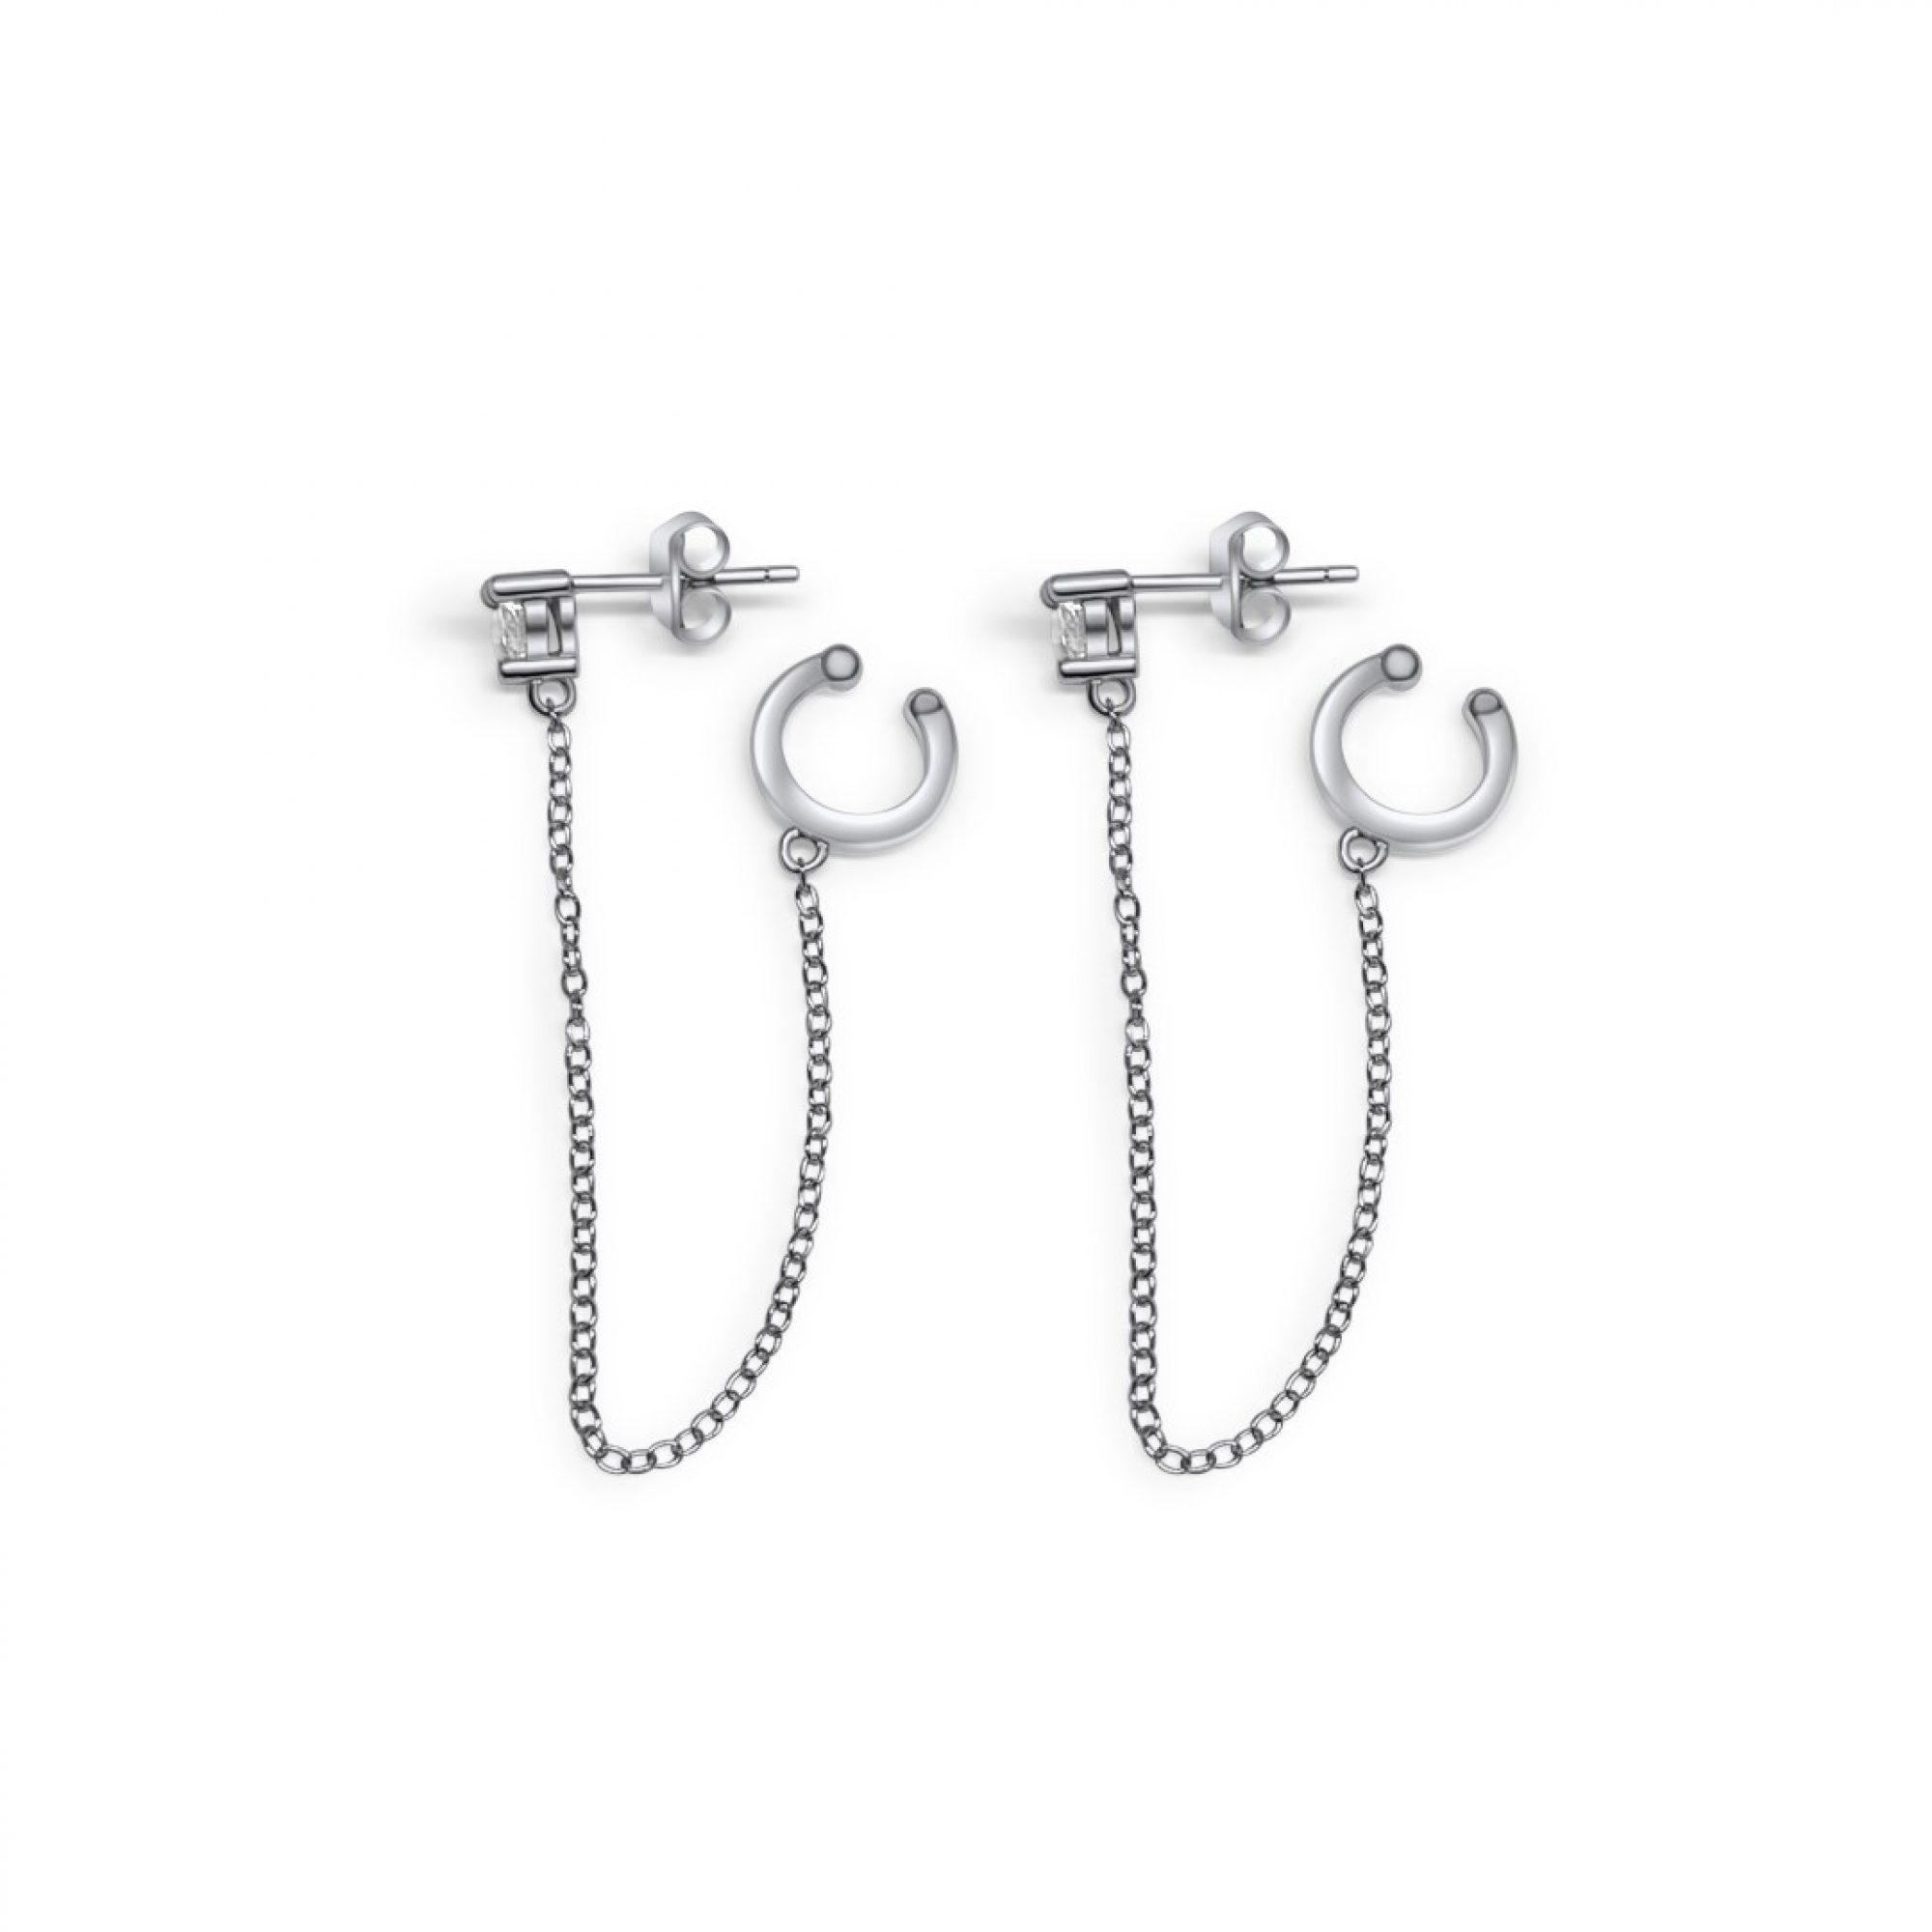 Silver earrings with zircon stone